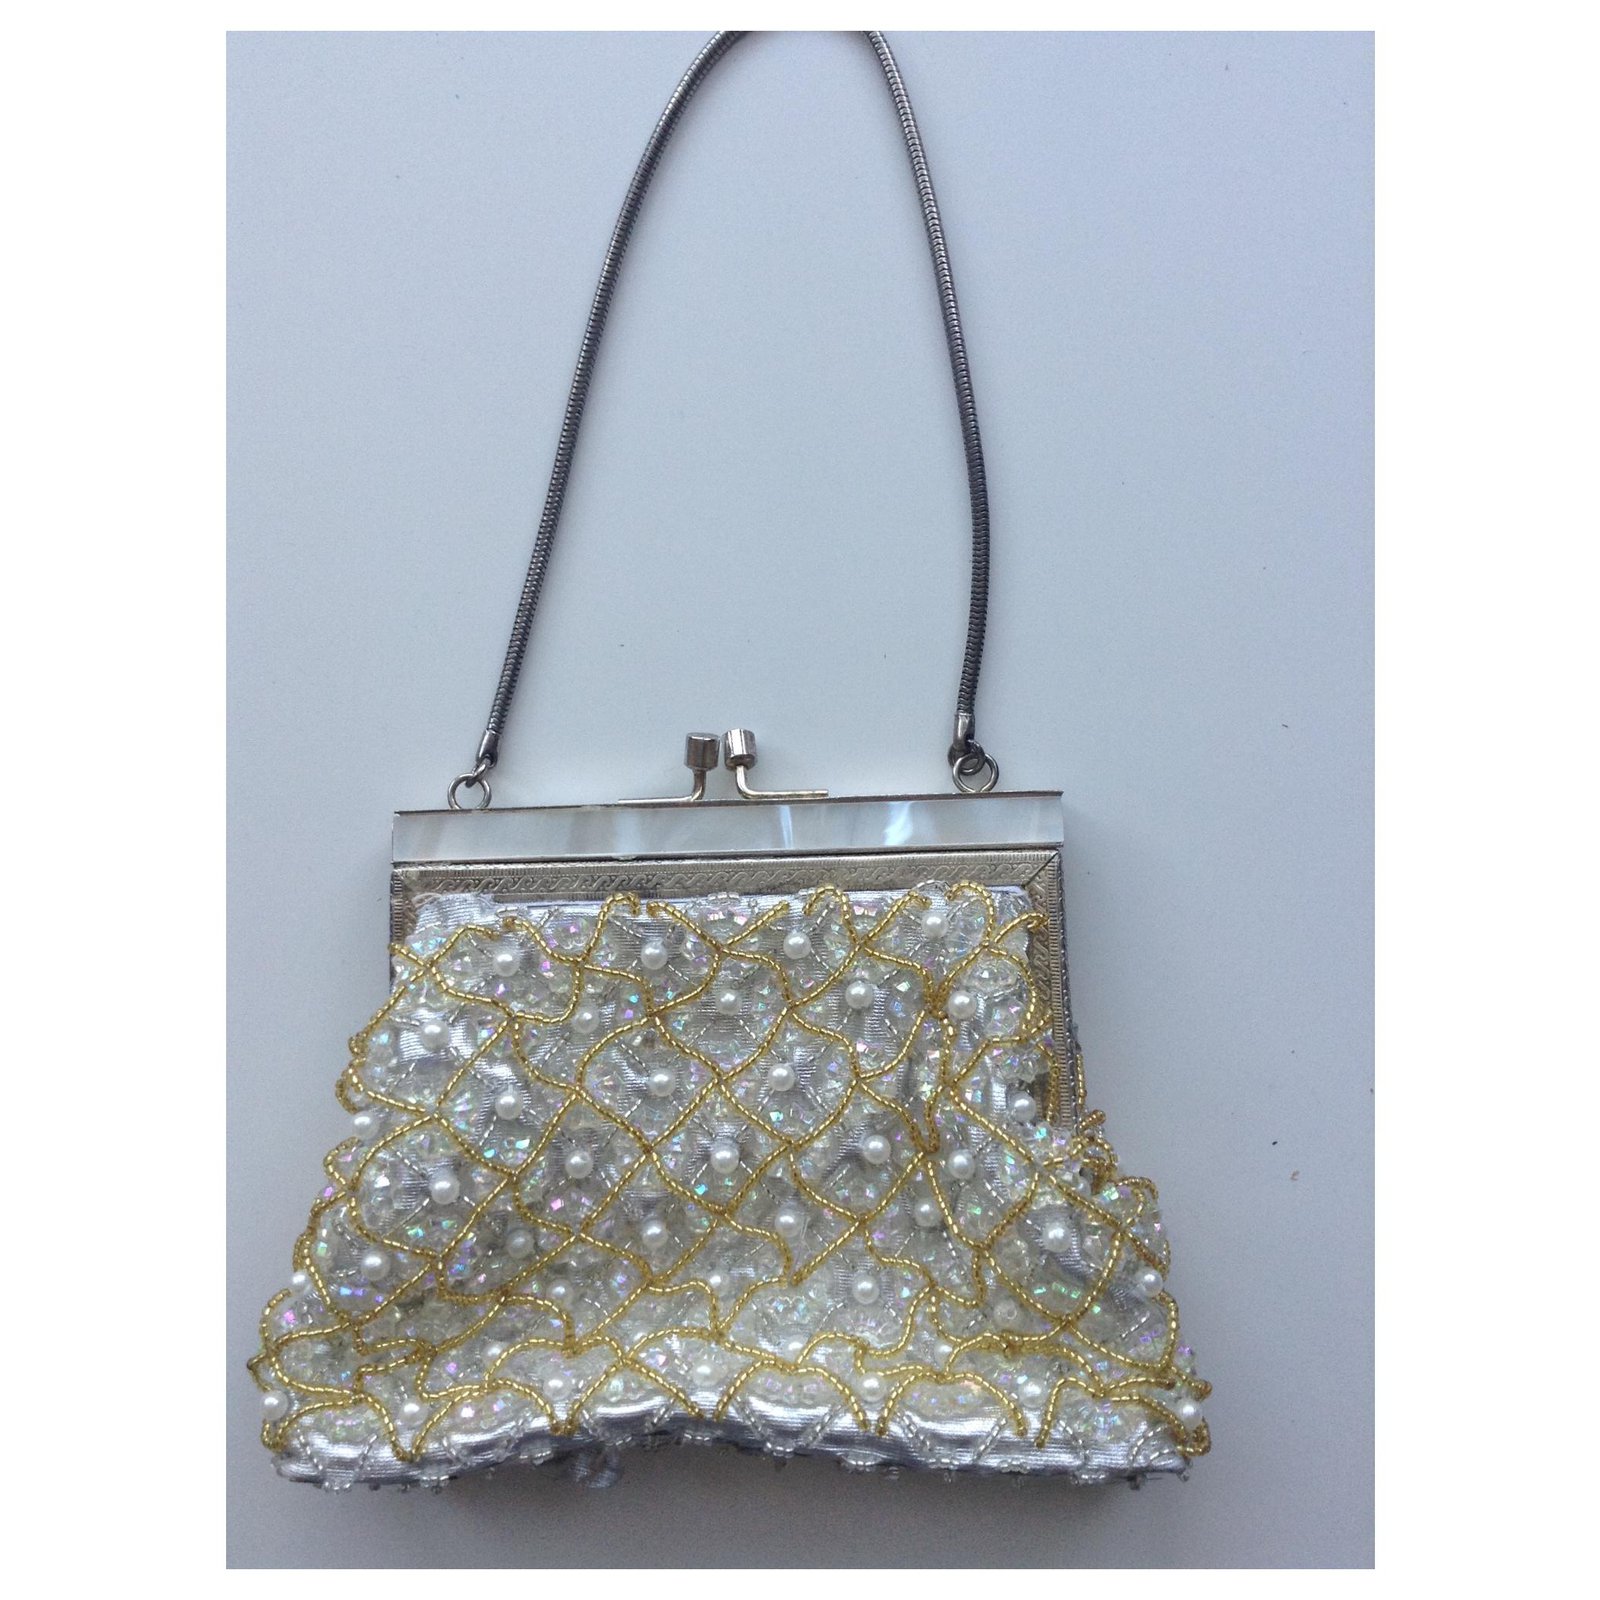 Handtasche von Lumured, Perlen, Abendtasche, weiss, goldener Clipper- Verschluss, vintage